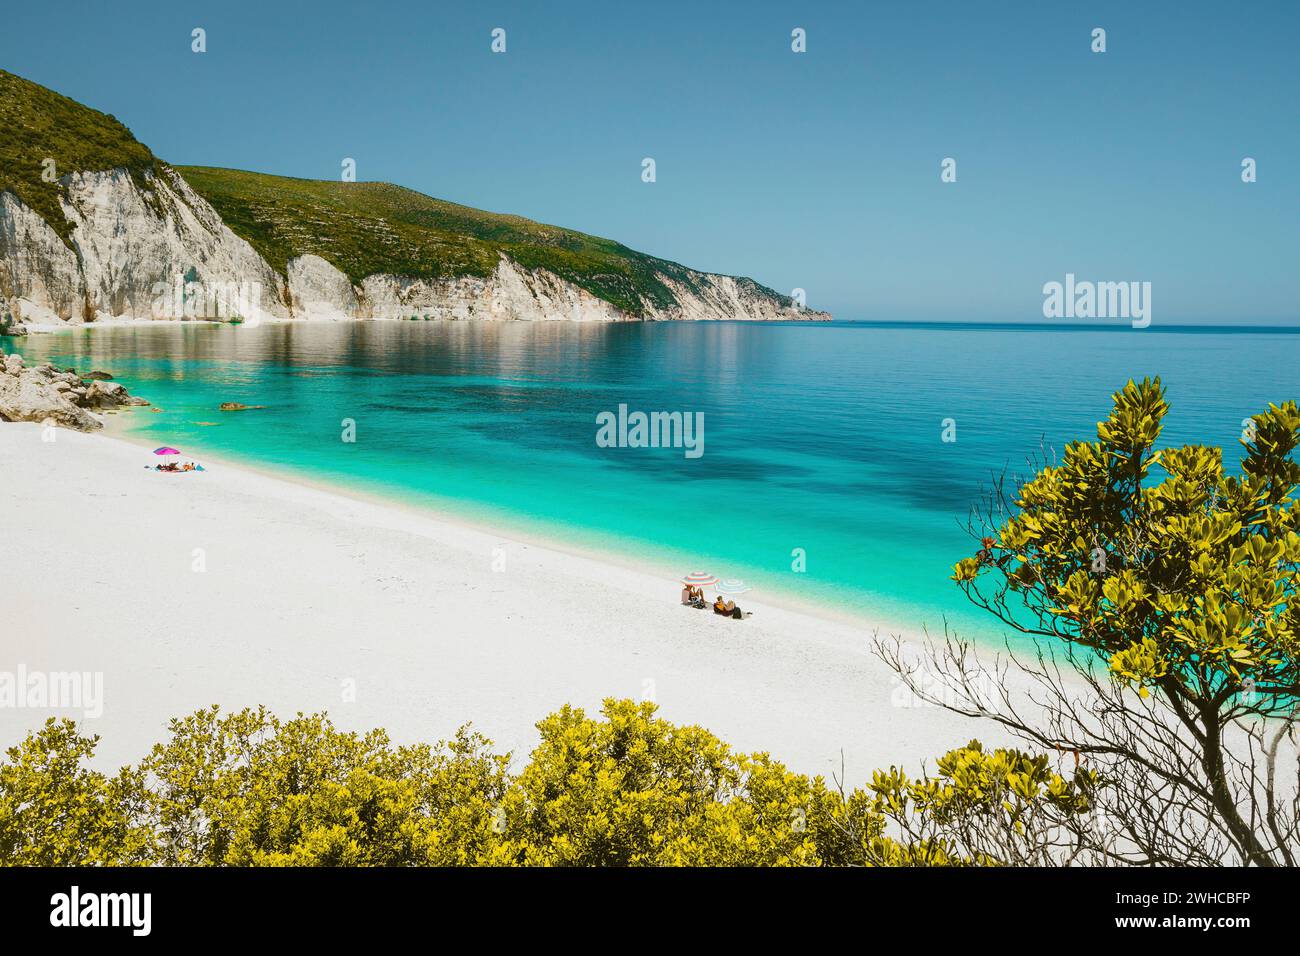 Fantastische Lagune am Strand von Fteri, Cephalonia Kefalonia, Griechenland. Touristen entspannen sich unter dem Sonnenschirm in der Nähe des klaren blauen smaragdtürkisfarbenen Meerwassers. Weiße Steine im Hintergrund. Stockfoto